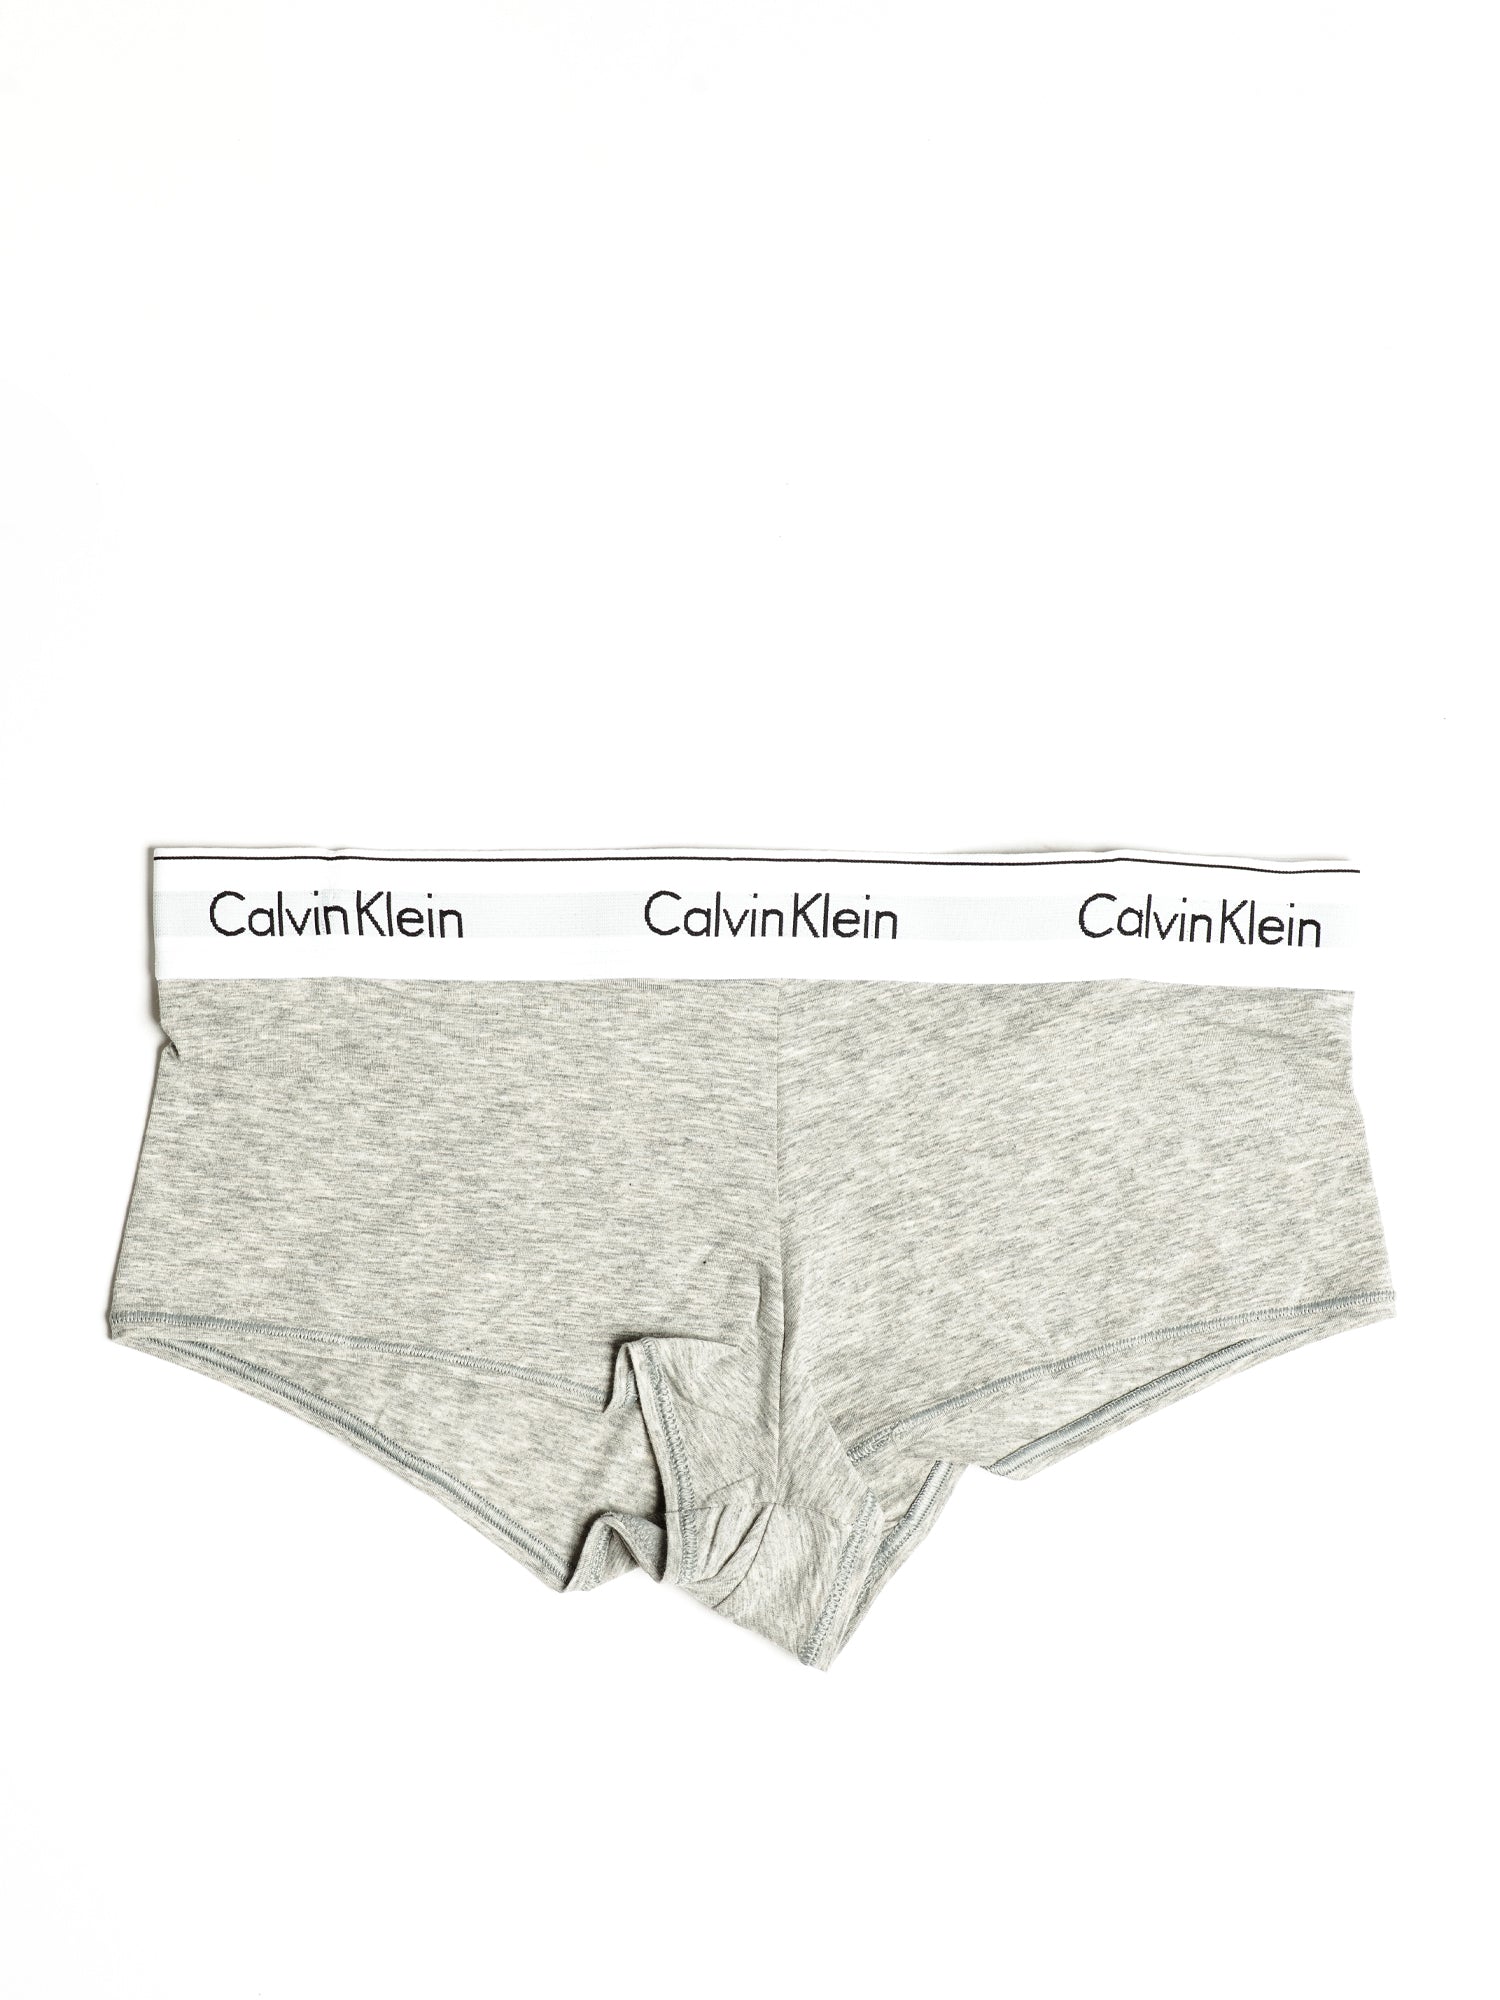 Calvin Klein Underwear Women's Monolith Cotton Shorts